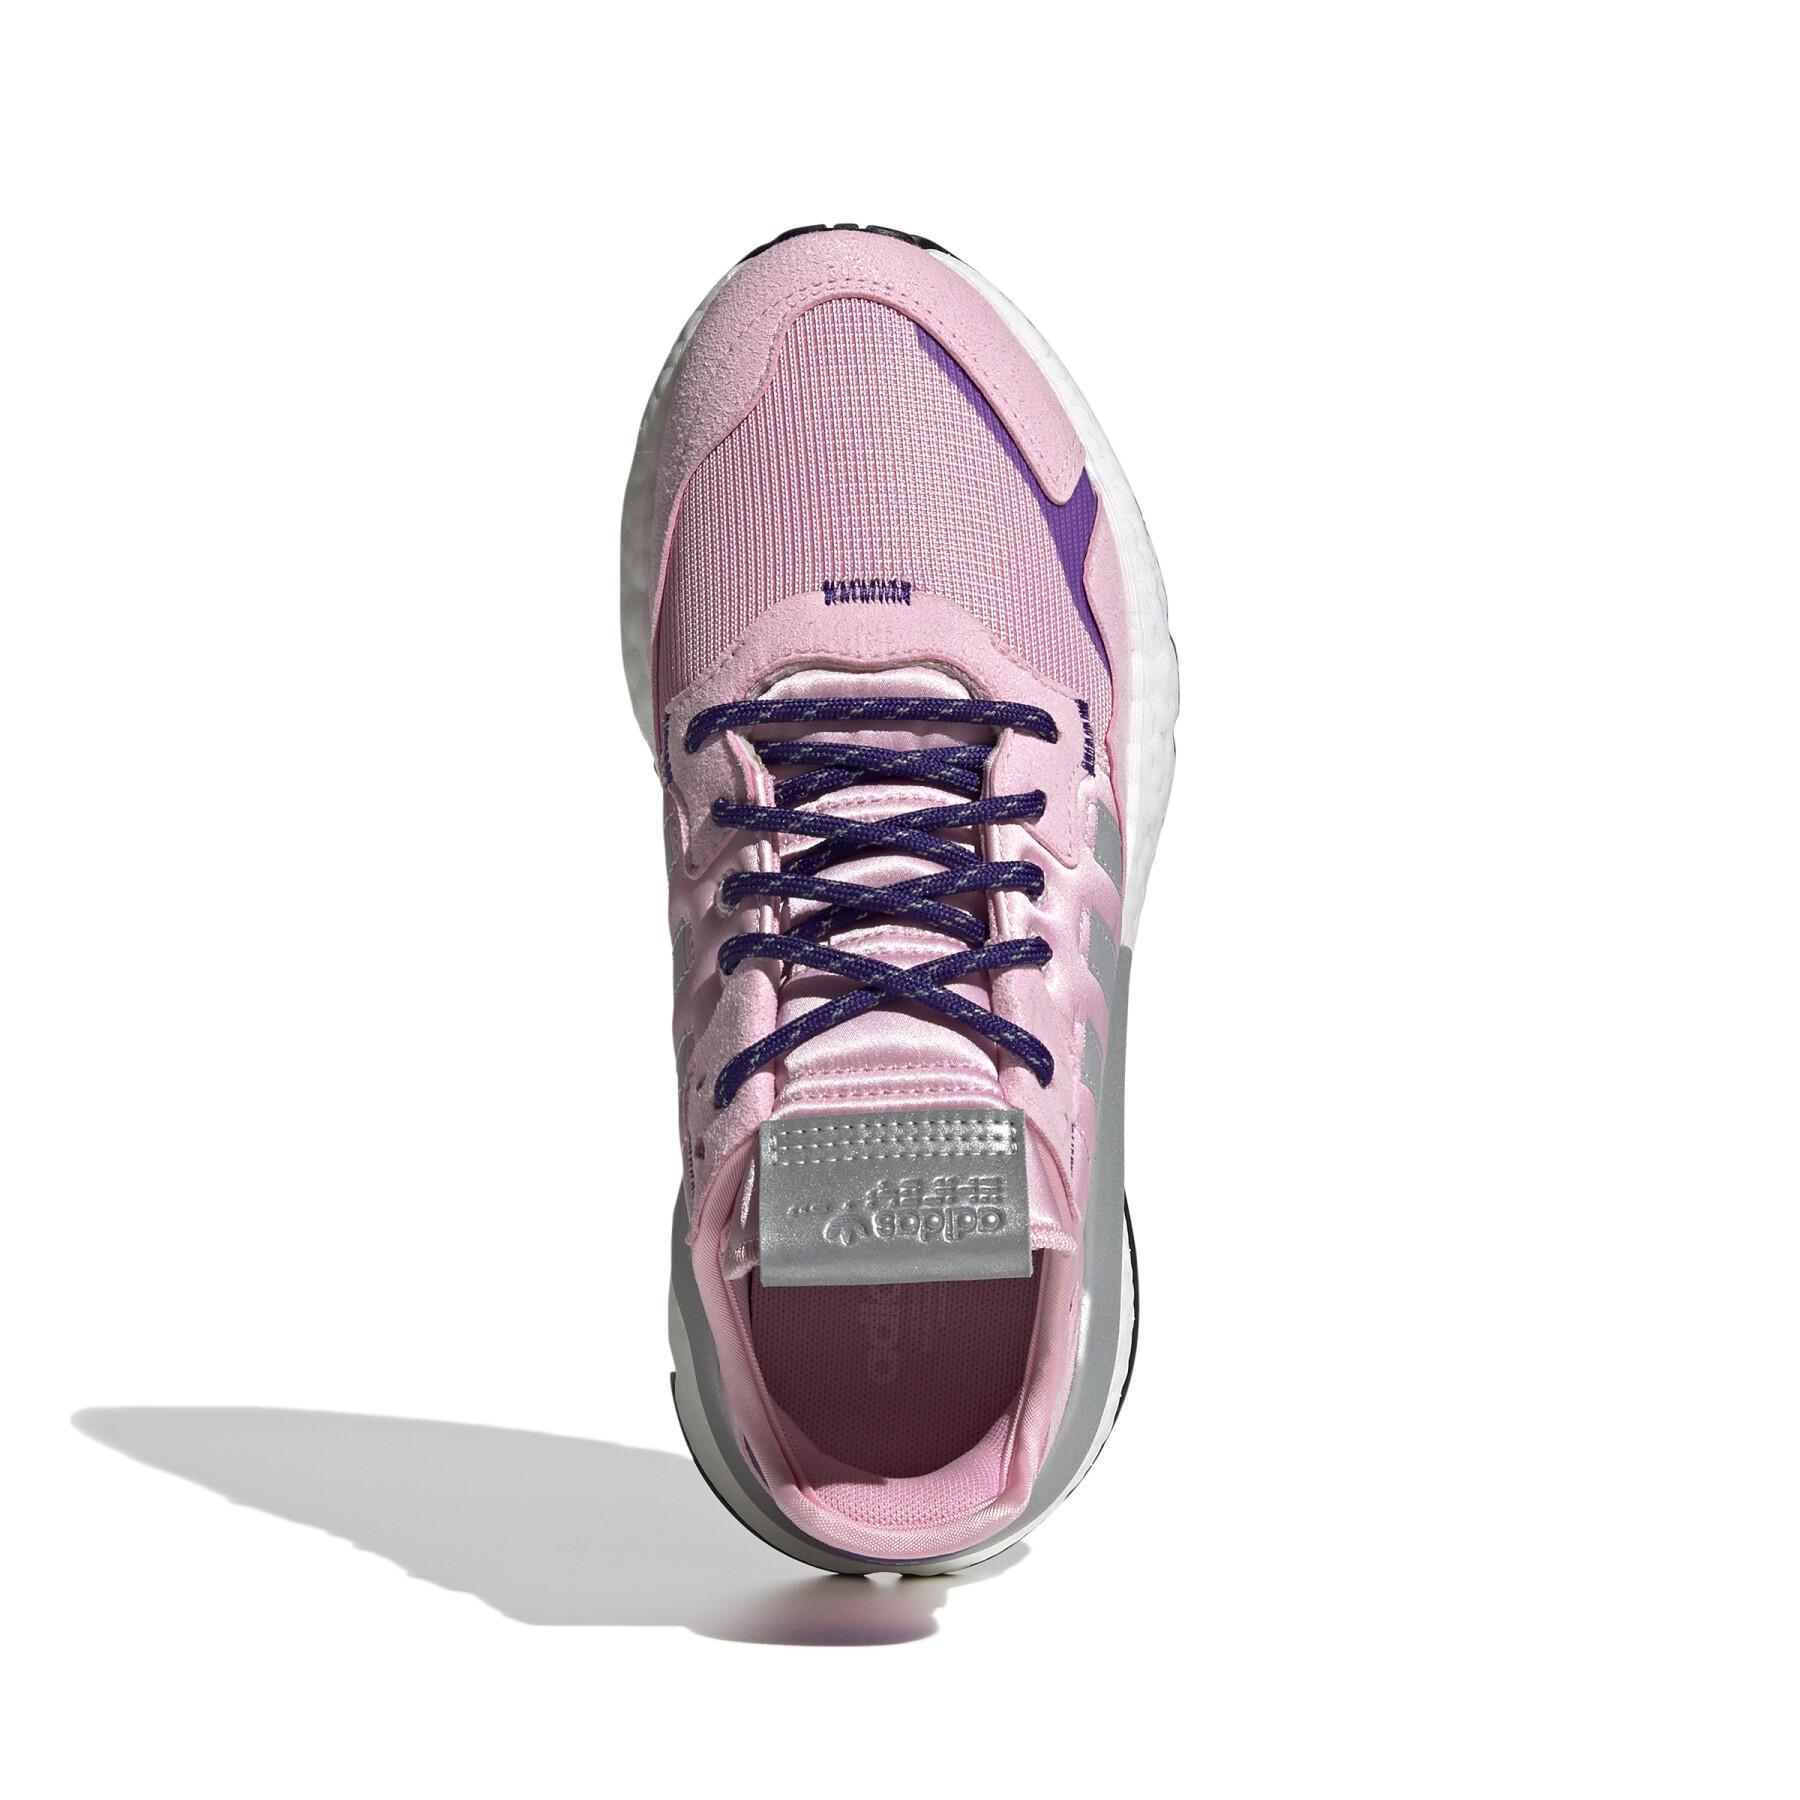 Zapatillas de deporte para mujeres adidas Originals Nite Jogger